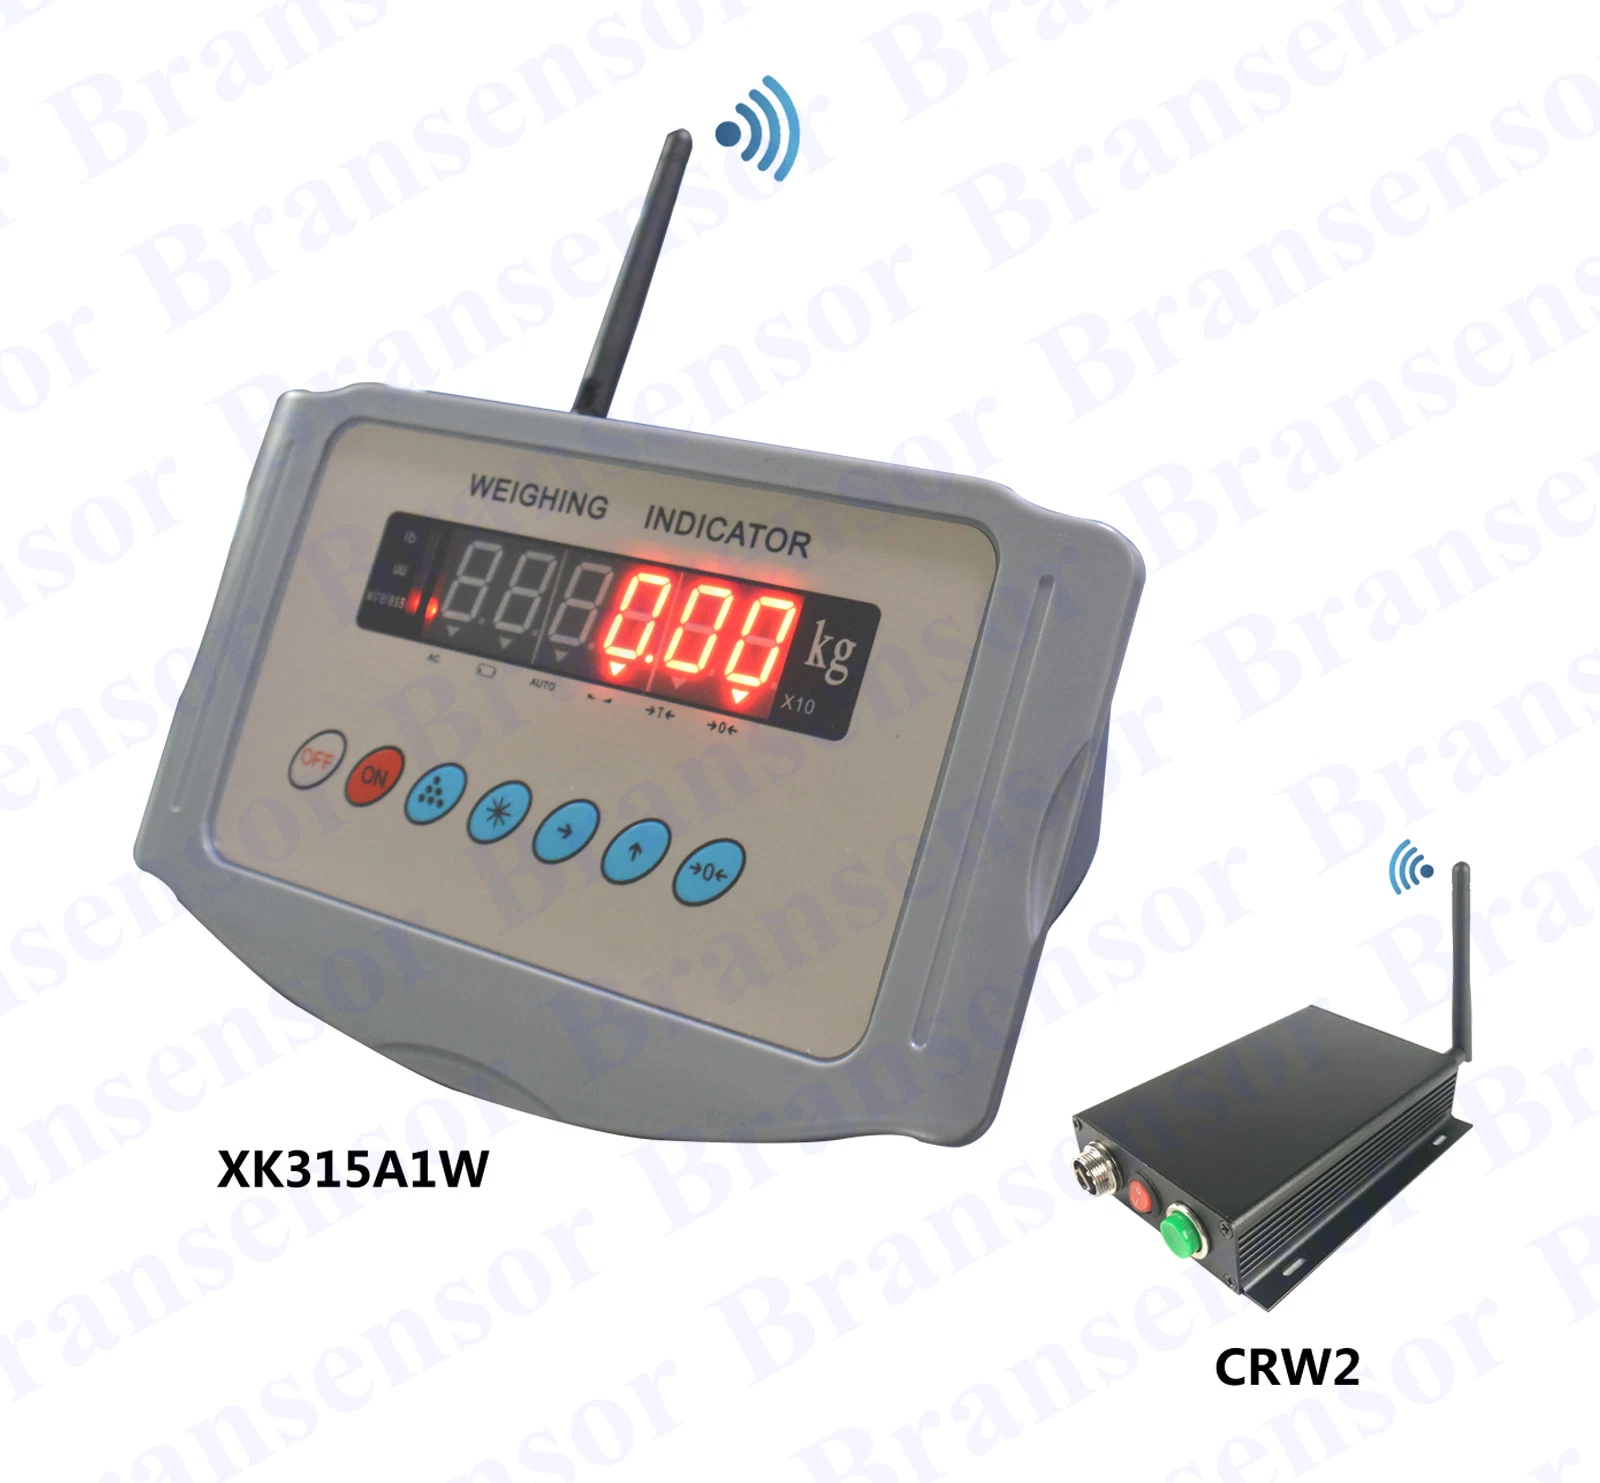 مؤشر الوزن اللاسلكي الأكثر شيوعاً مع واجهة تسلسلية RS232/RS485 مزودة بشاشة LED ذات 6 أرقام تستخدم لقياس النظام الإلكتروني، ومقياس الوزن (XK315A1W)